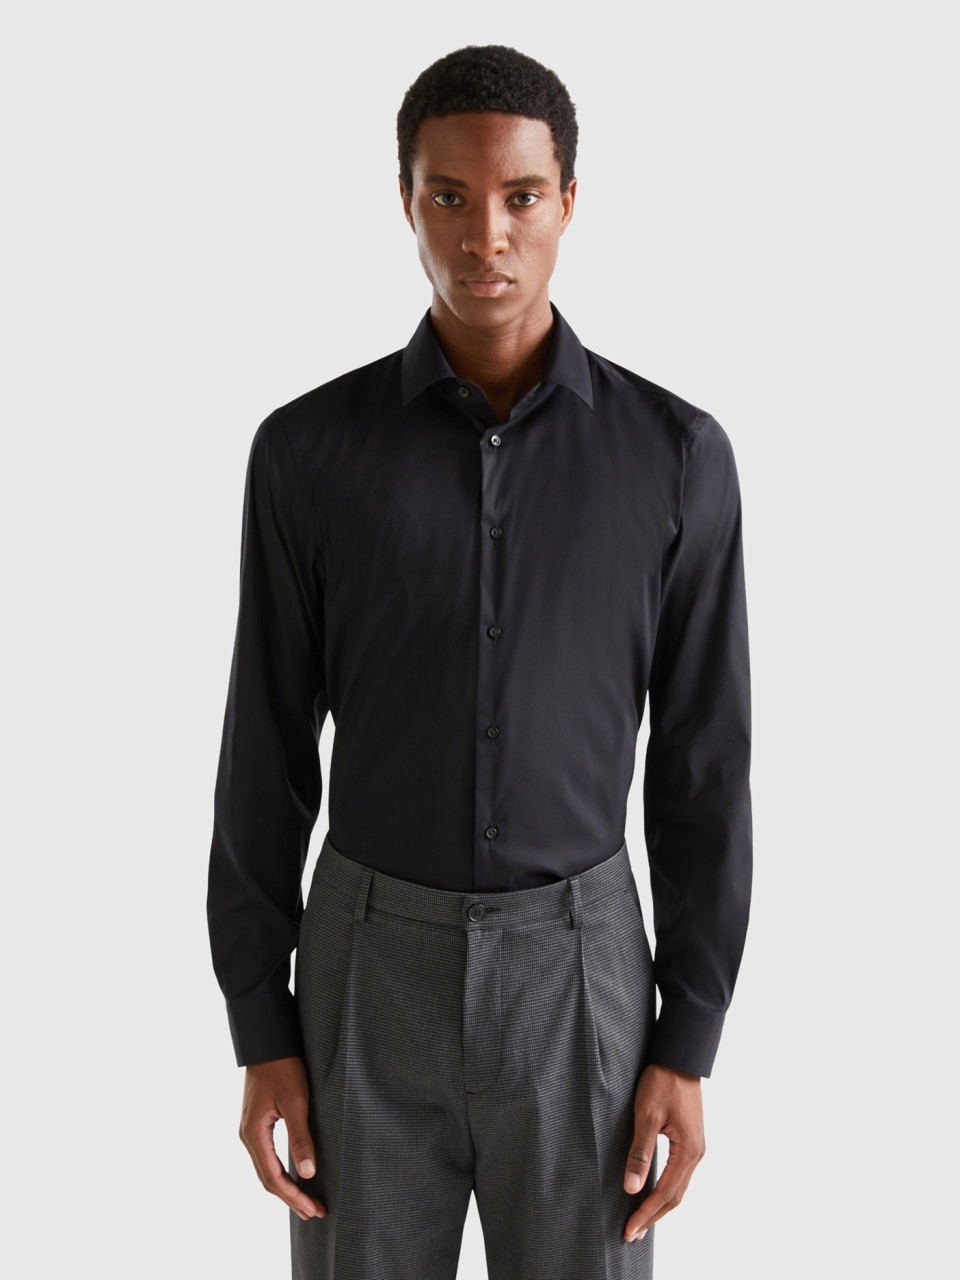 Benetton, Solid Color Slim Fit Shirt, Black, Men